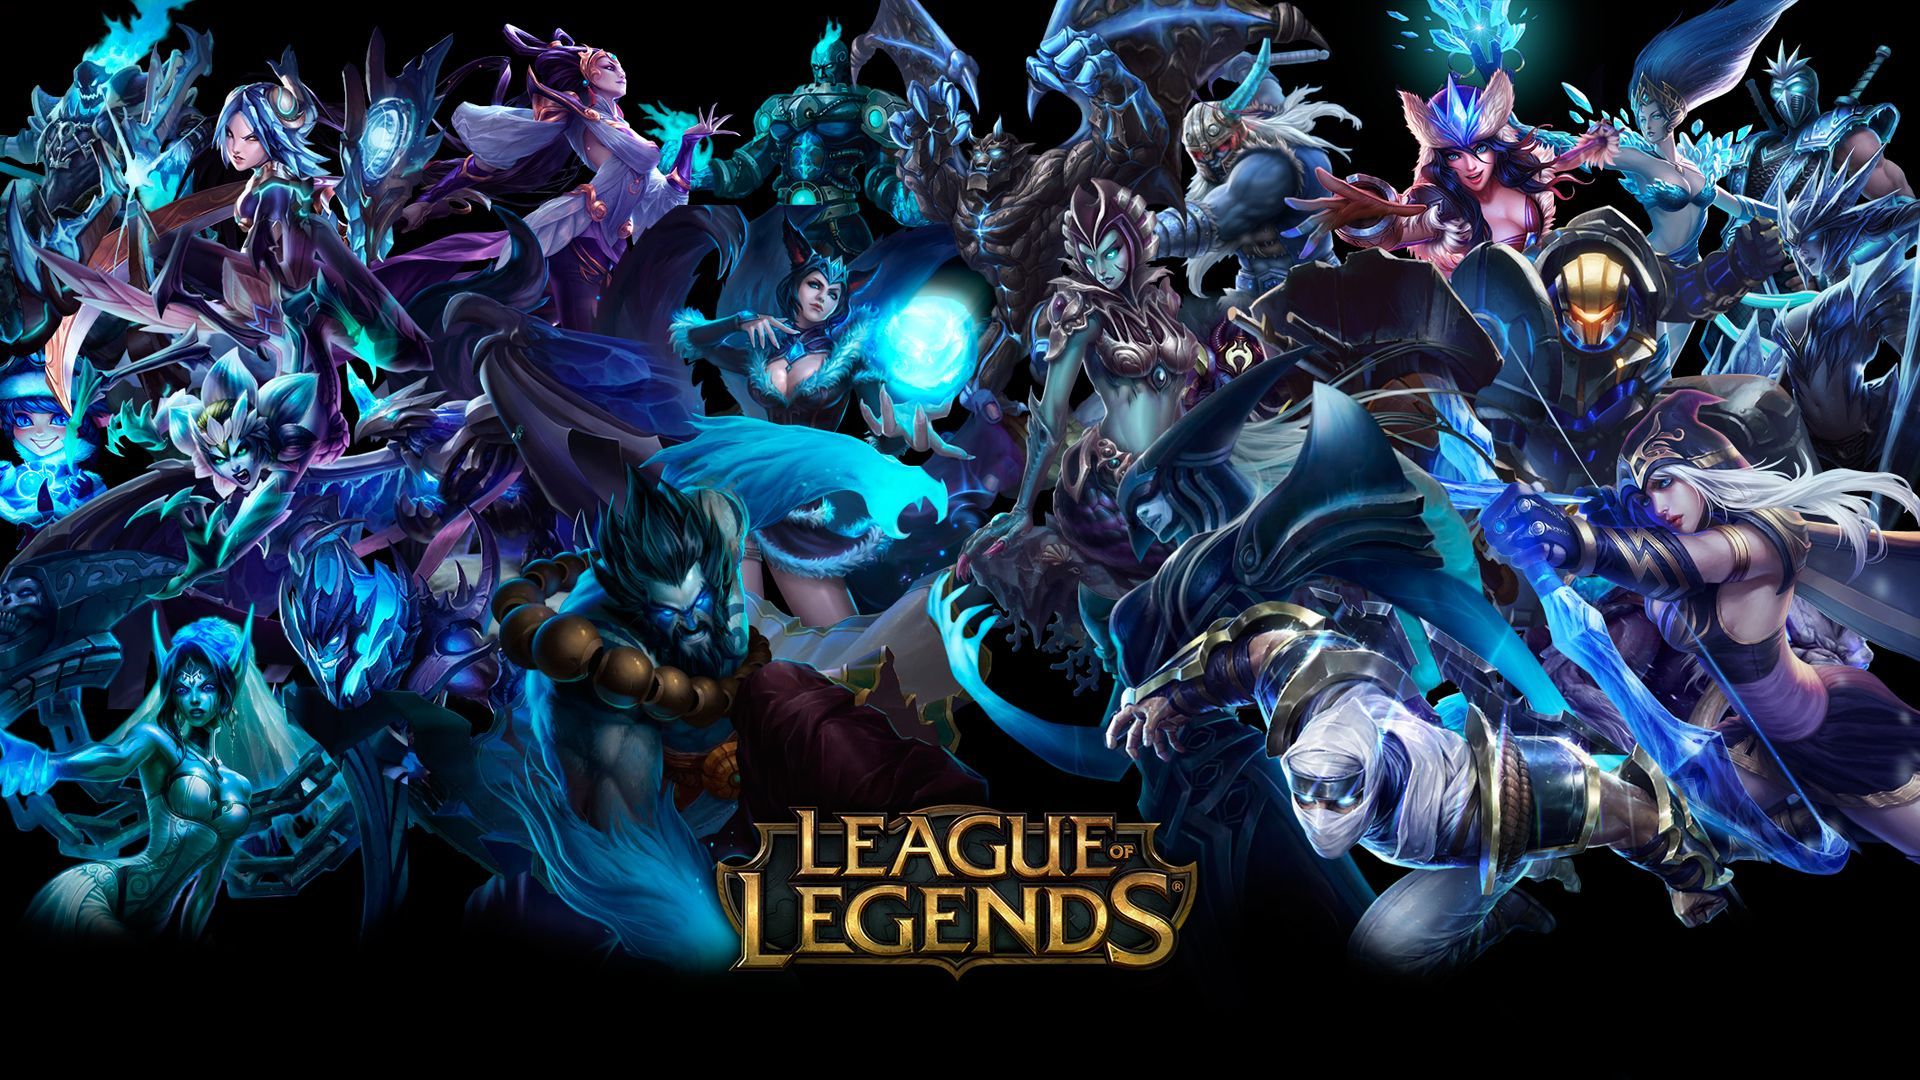 League of legends champions hd wallpaper rikkutenjouss